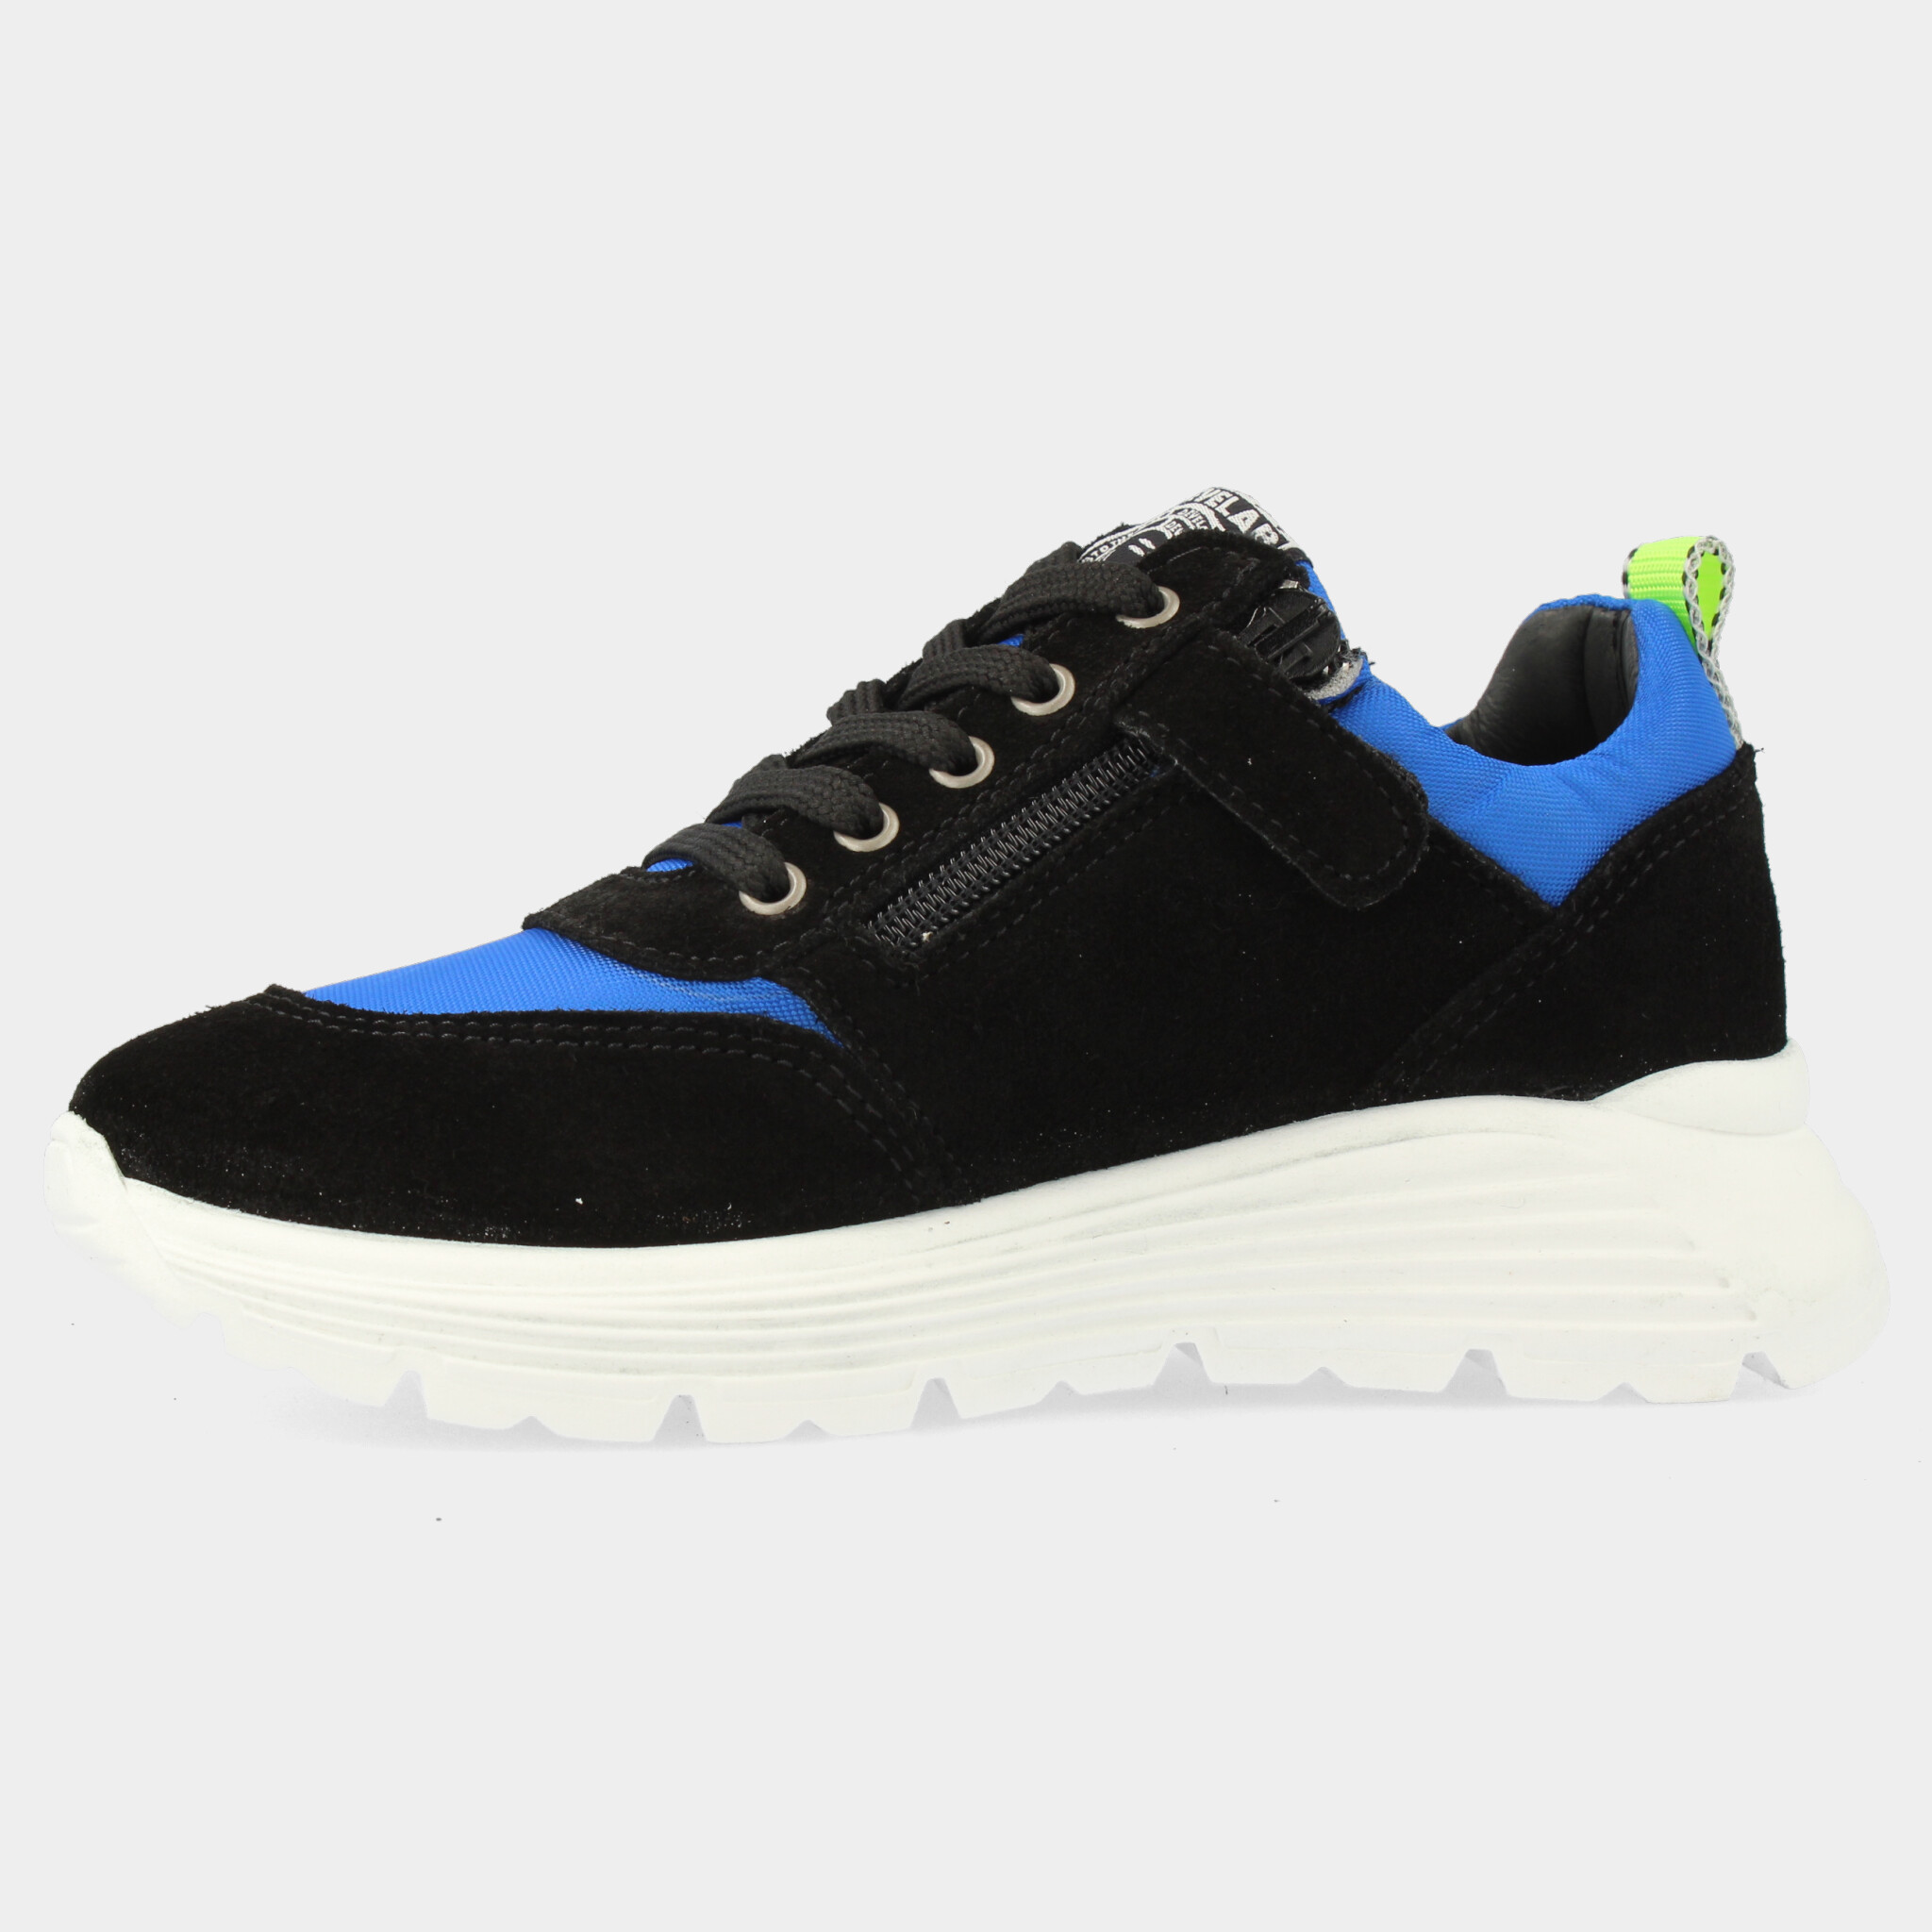 Blauwe sneakers | 45923